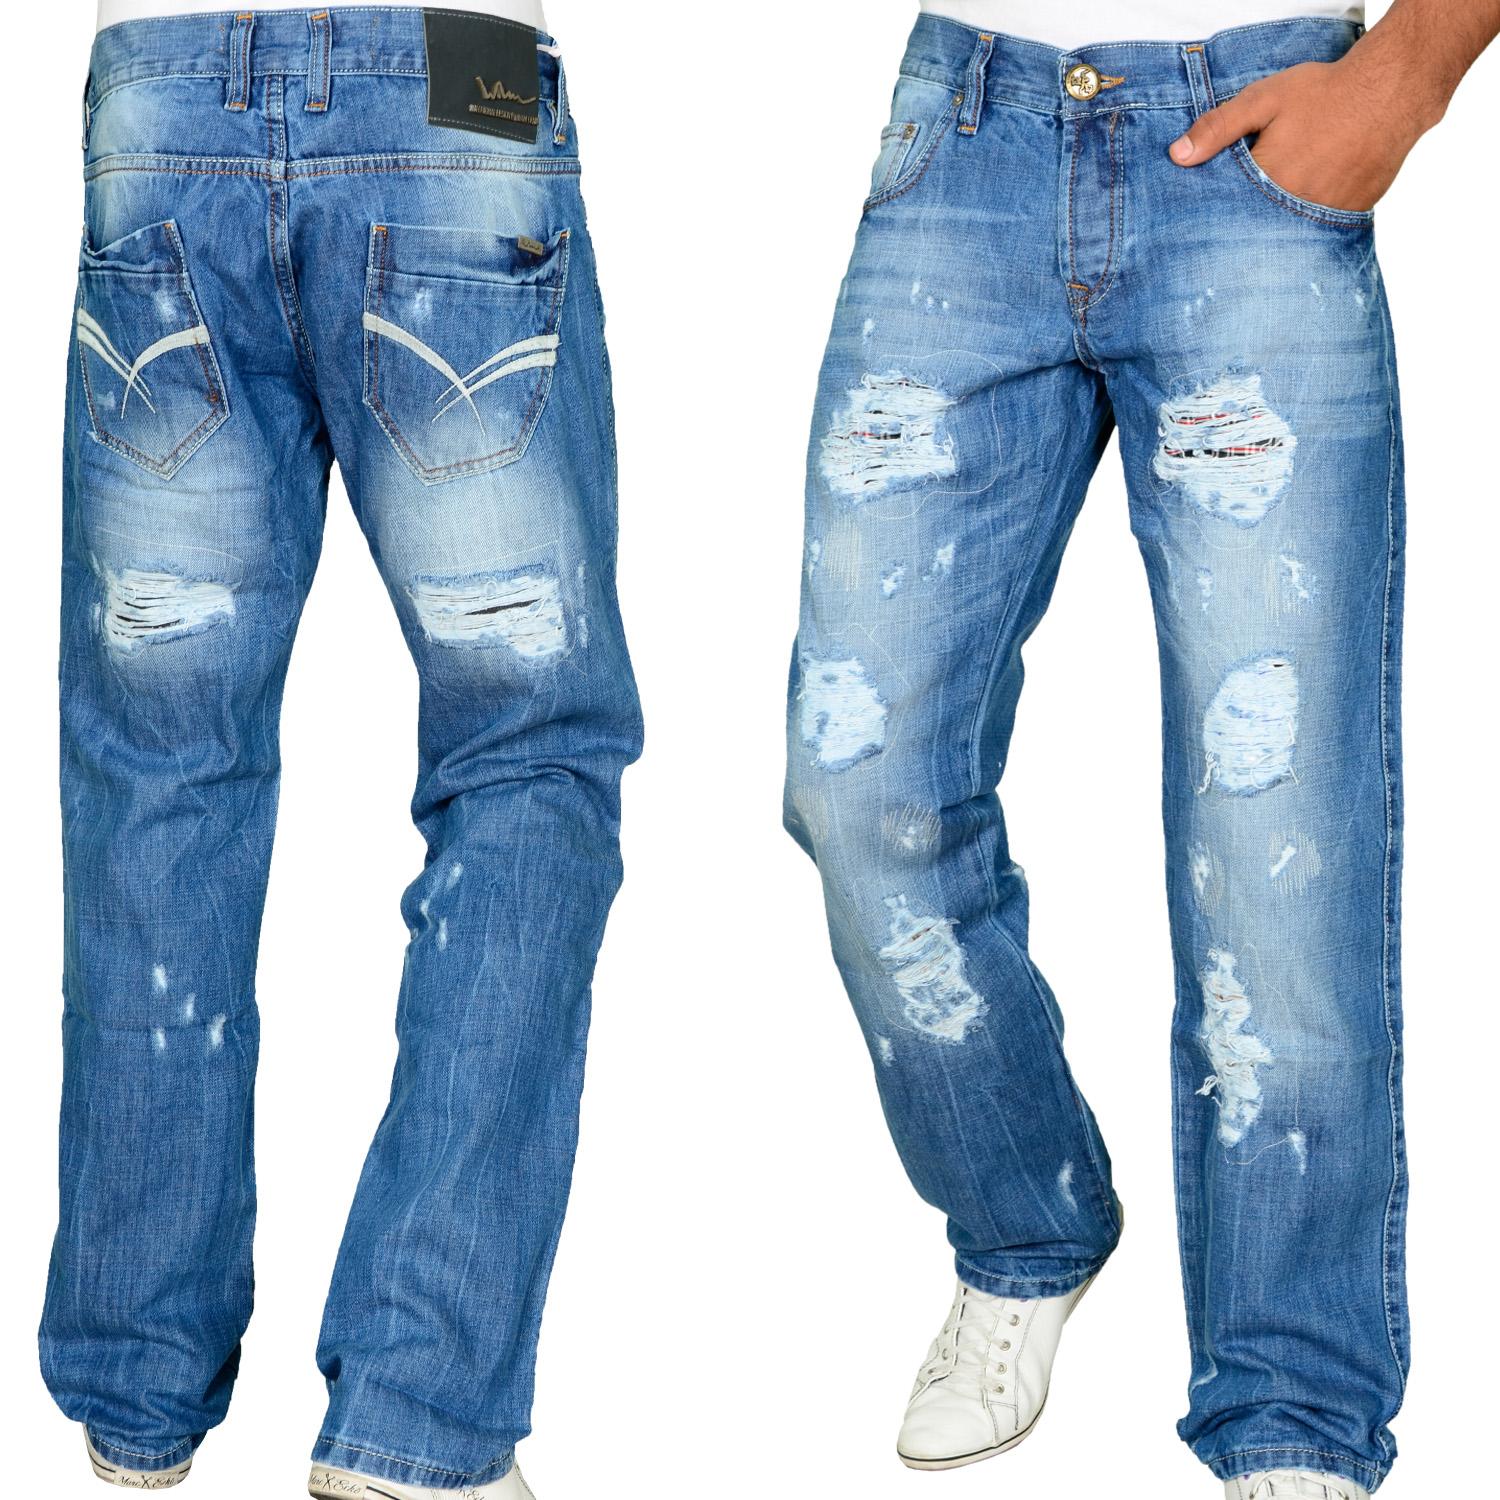 Foto Wam Denim Regular Fit Jeans Azul foto 187434